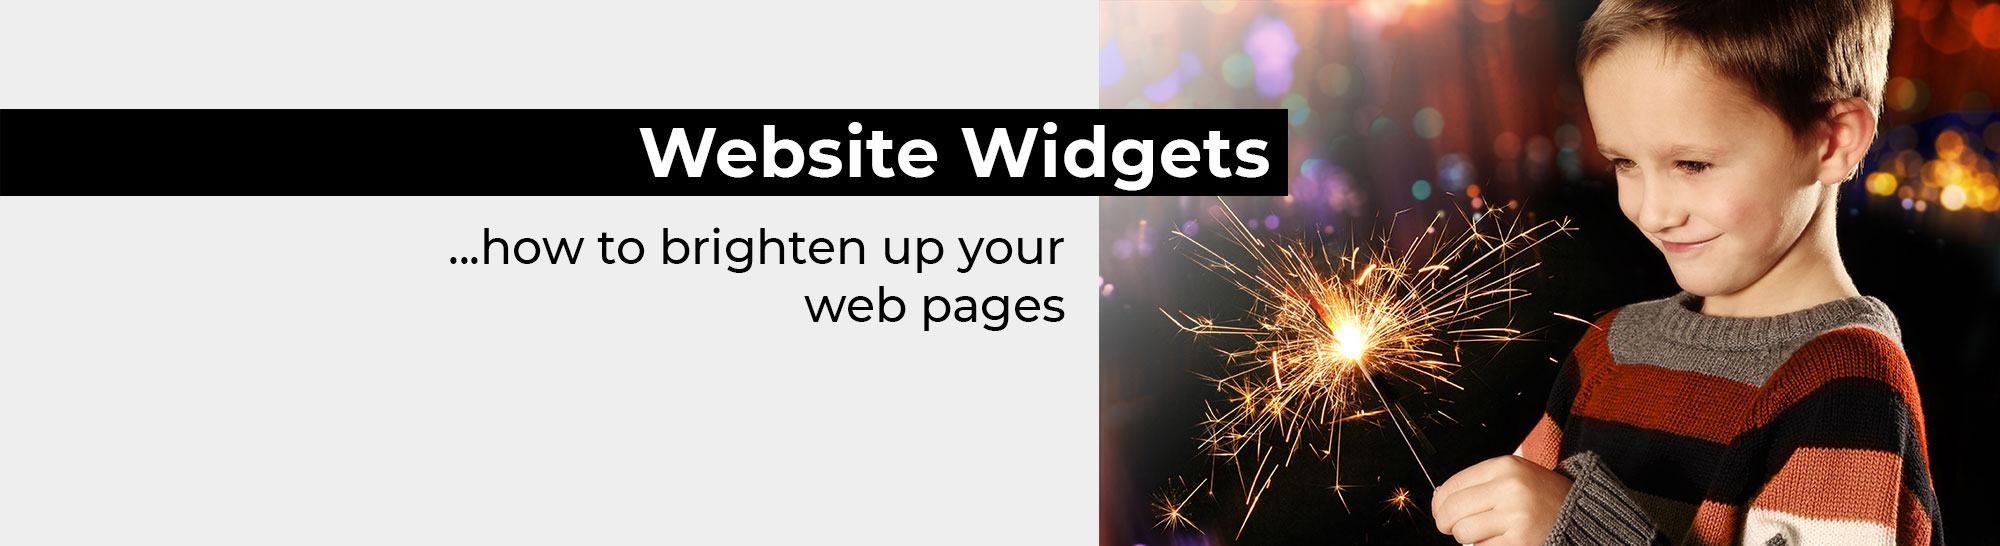 Website Widgets